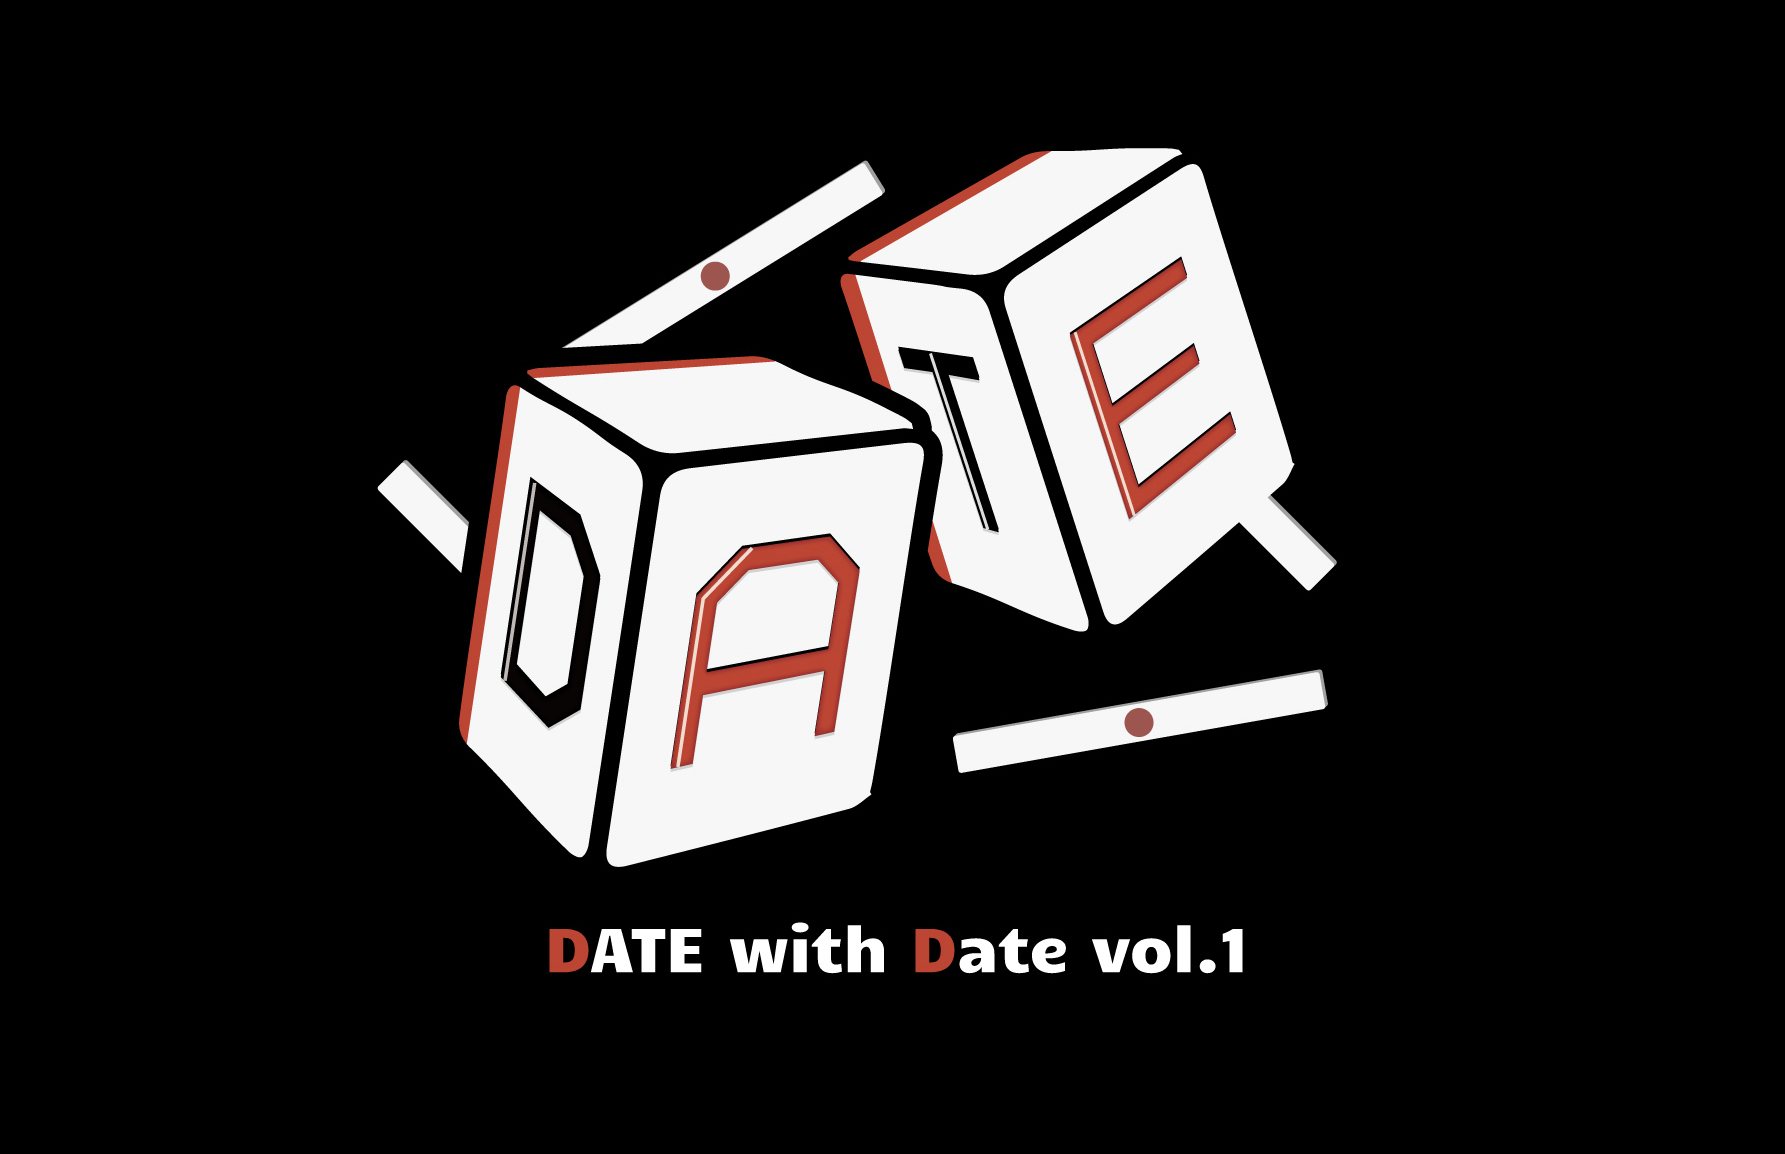 伊達朱里紗ファンミーティング 「DATE with Date vol.1」